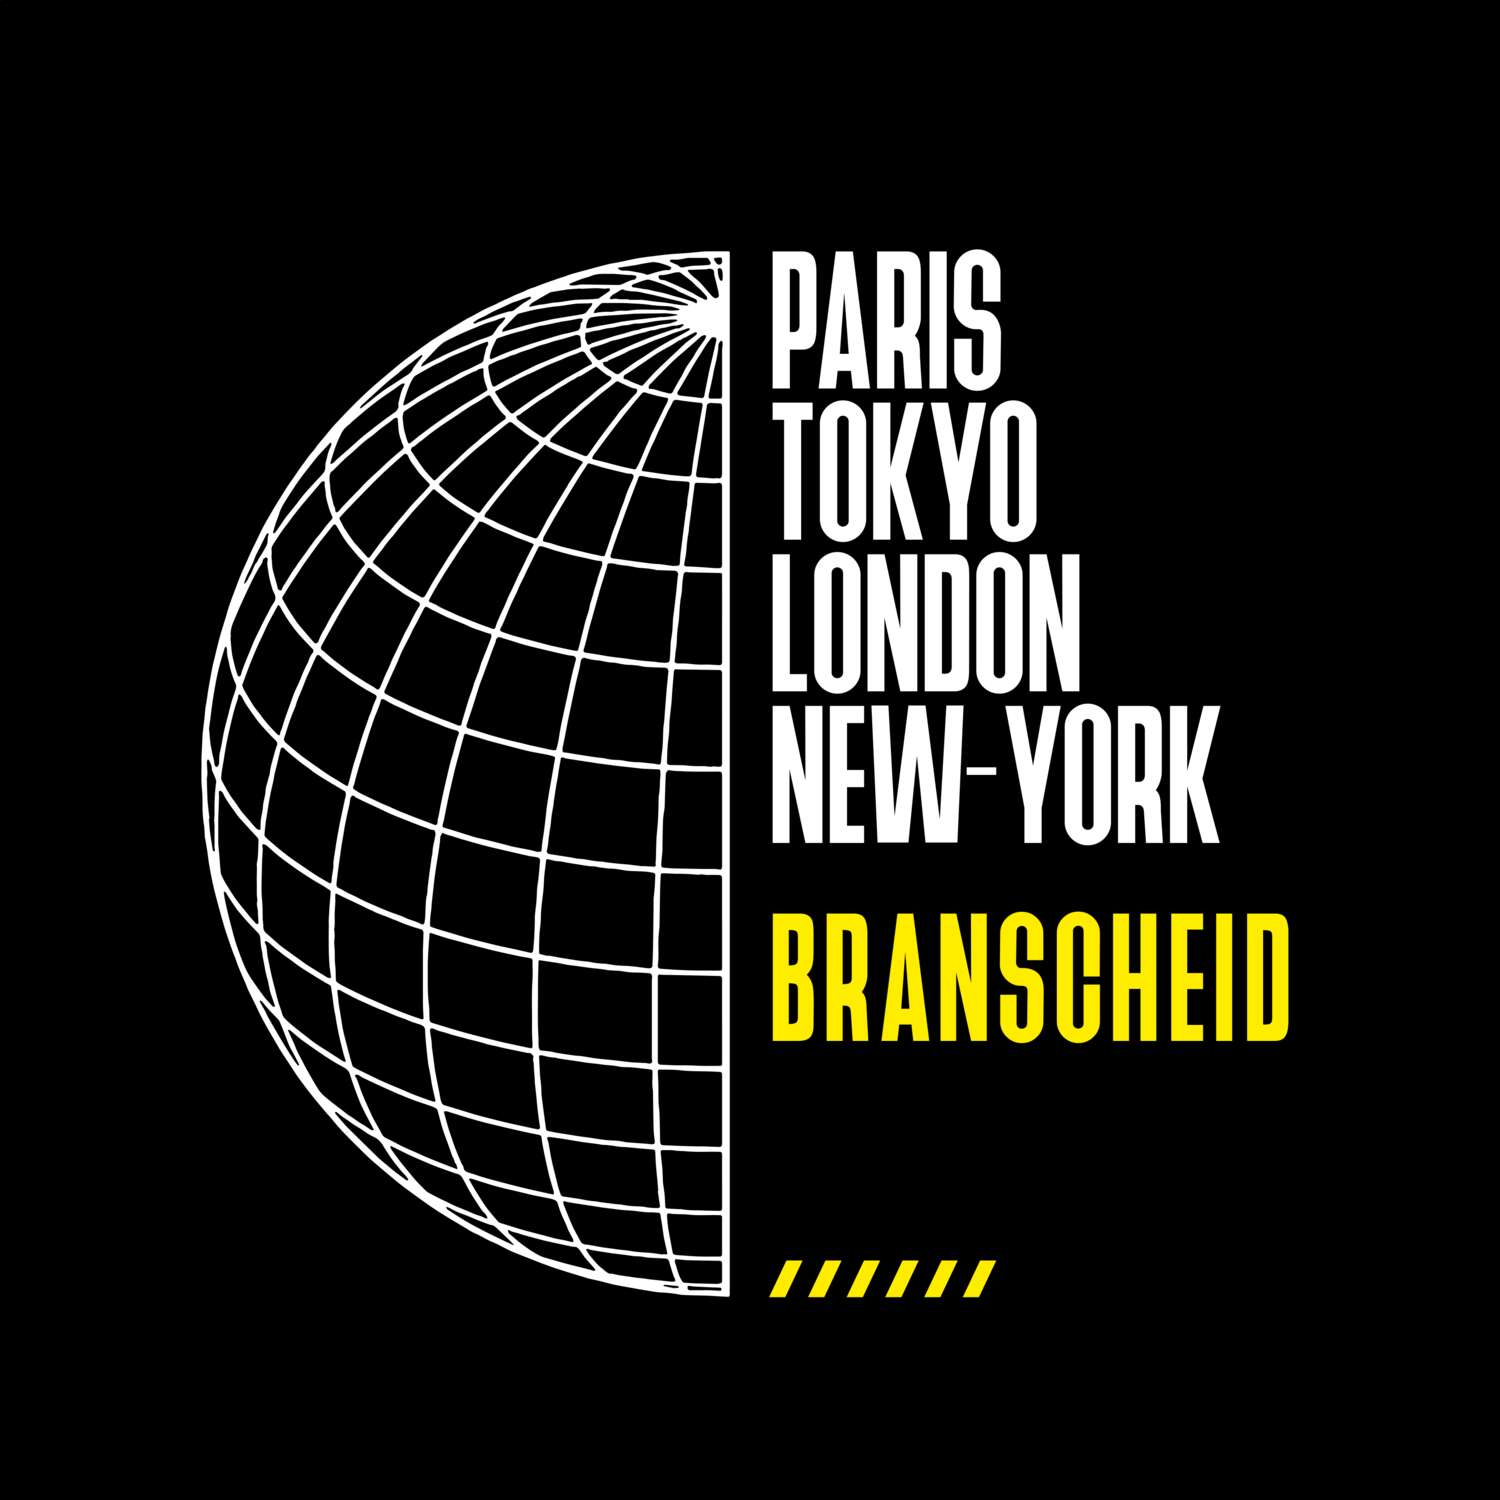 Branscheid T-Shirt »Paris Tokyo London«